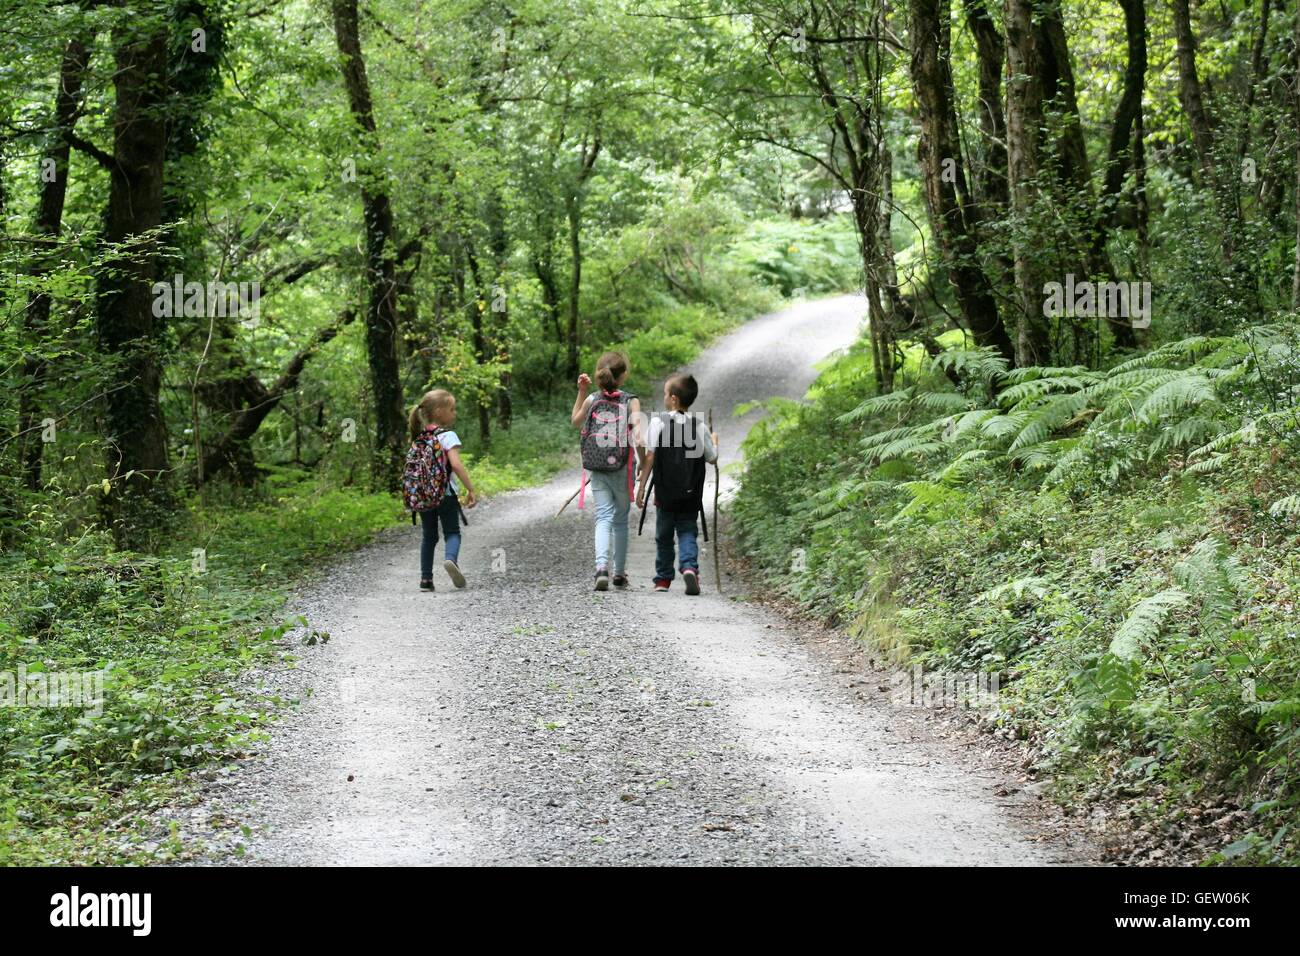 three children walking through woods Stock Photo